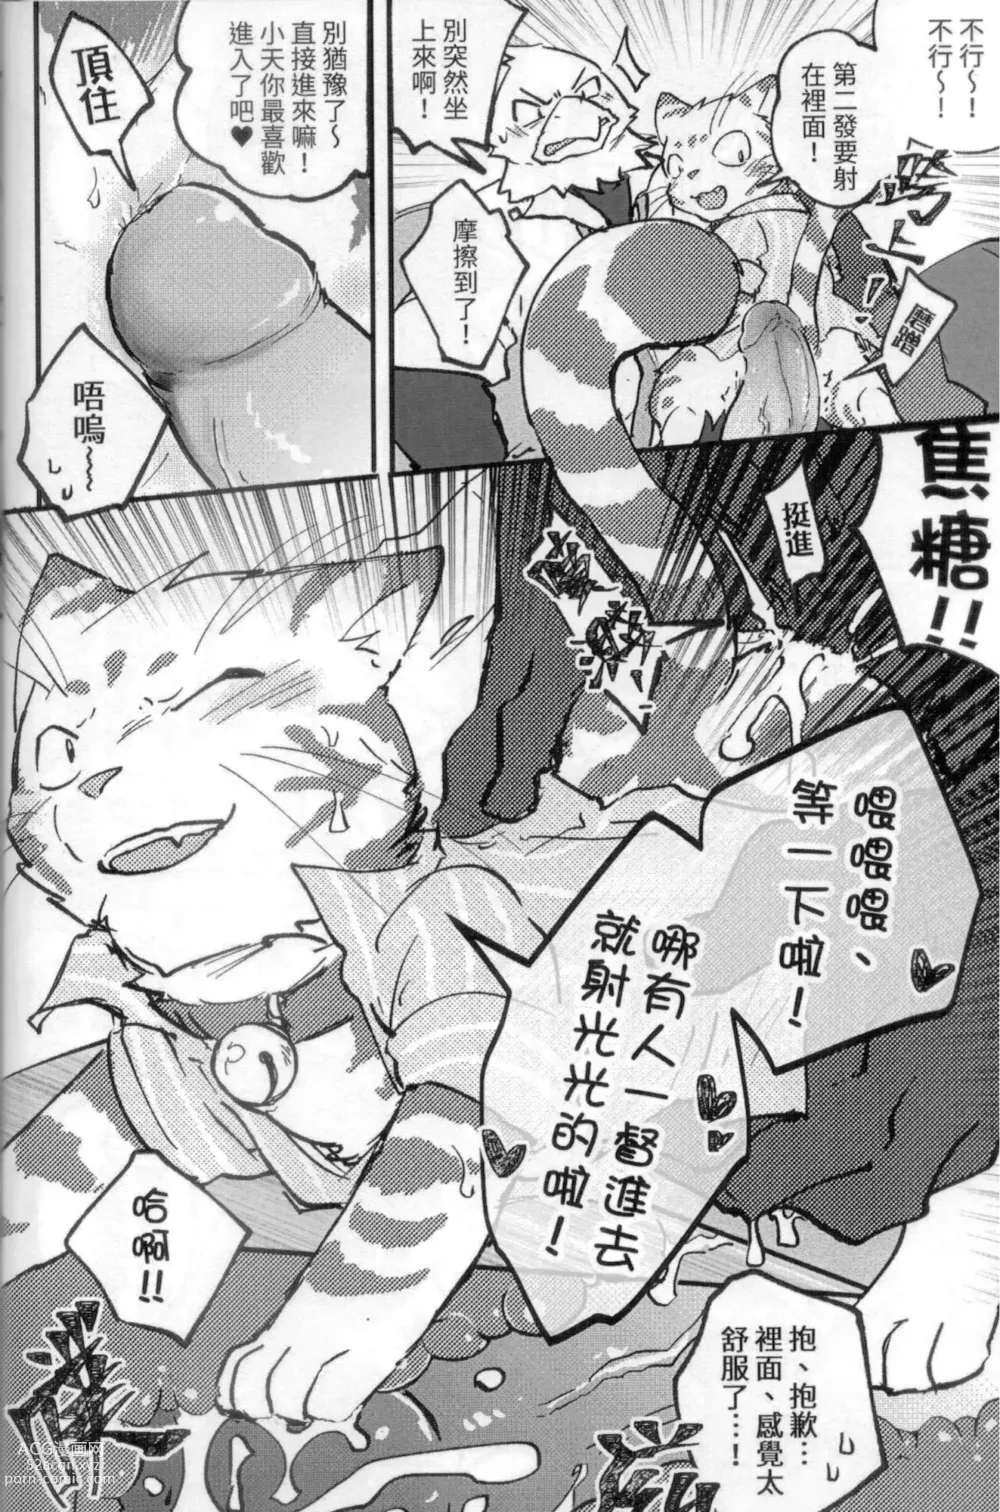 Page 9 of doujinshi 啊就脫掉吧